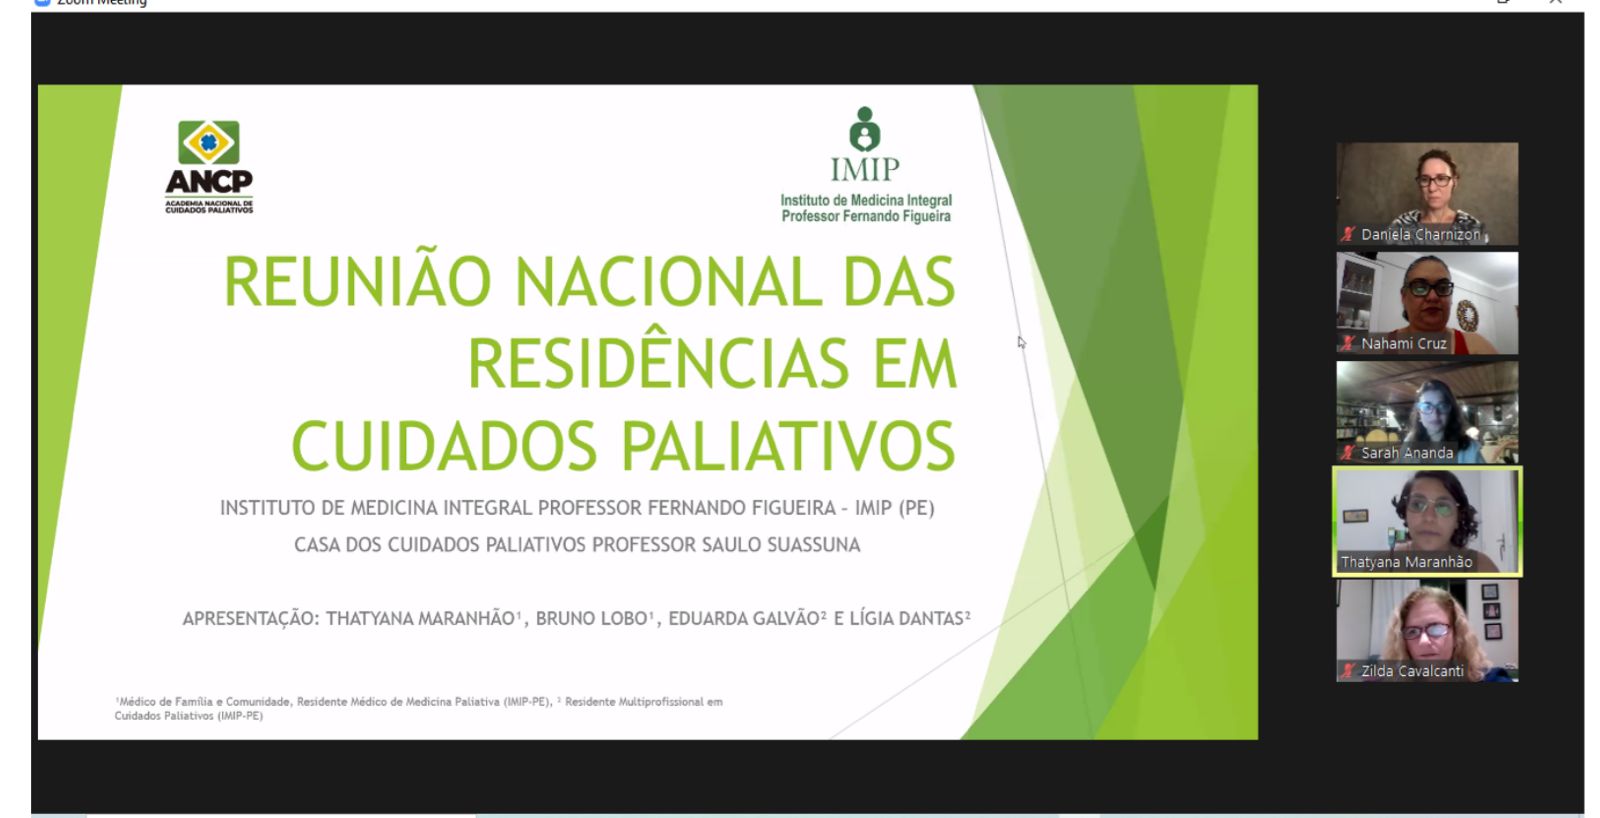 Residentes do IMIP (PE) abordam caso detalhado no II Encontro Virtual Científico de Residentes do Brasil em Cuidados Paliativos